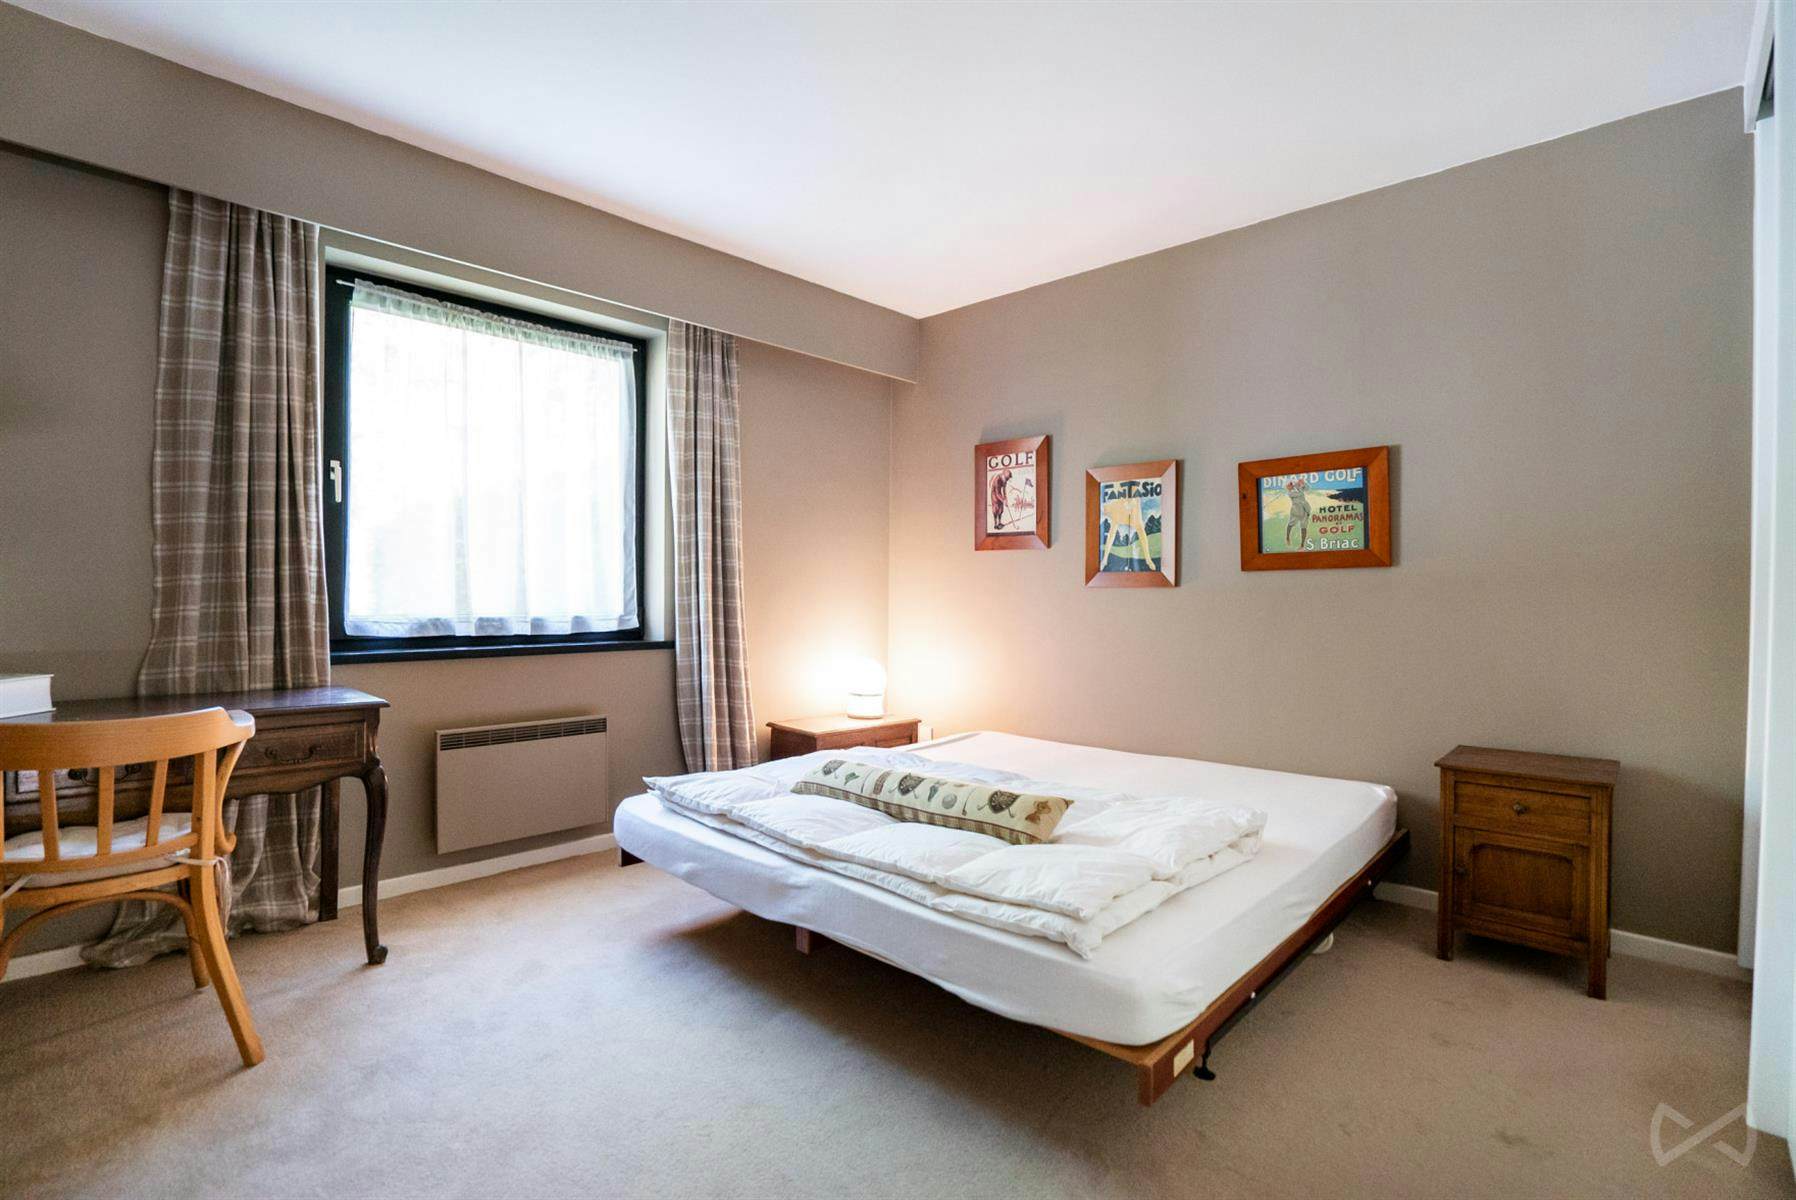 Foto 1 van 4 van Appartement met drie slaapkamers in Grez-Doiceau